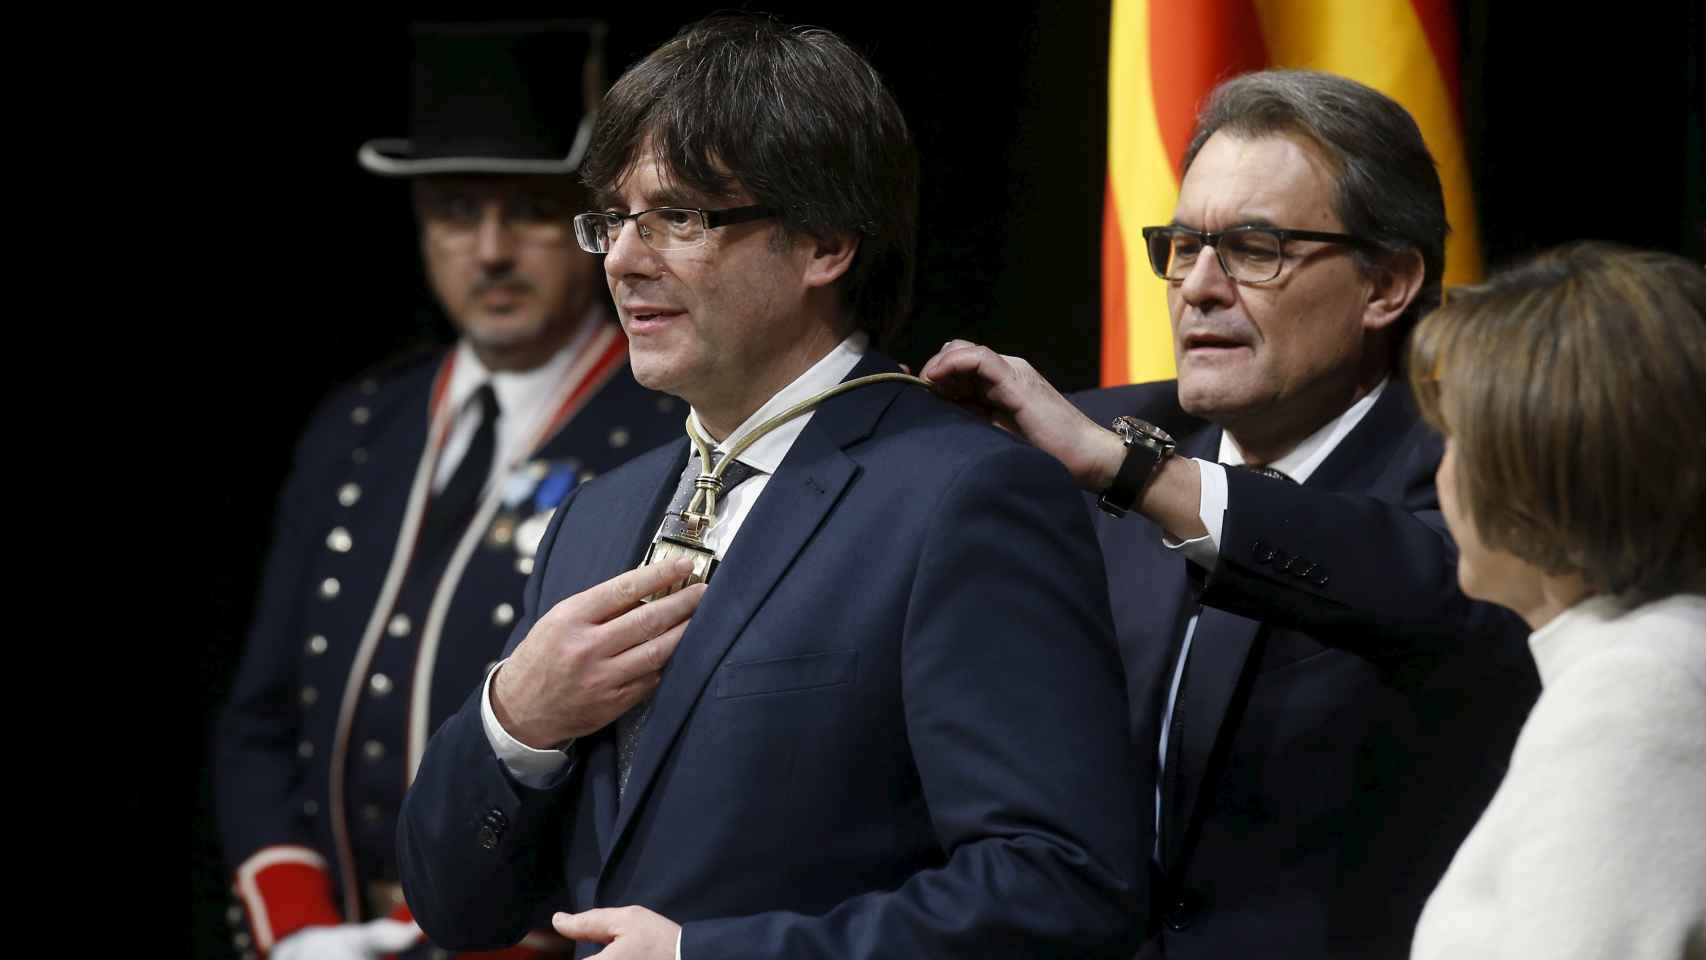 Puigdemont durante la ceremonia de investidura, con Artur Mas a sus espaldas.